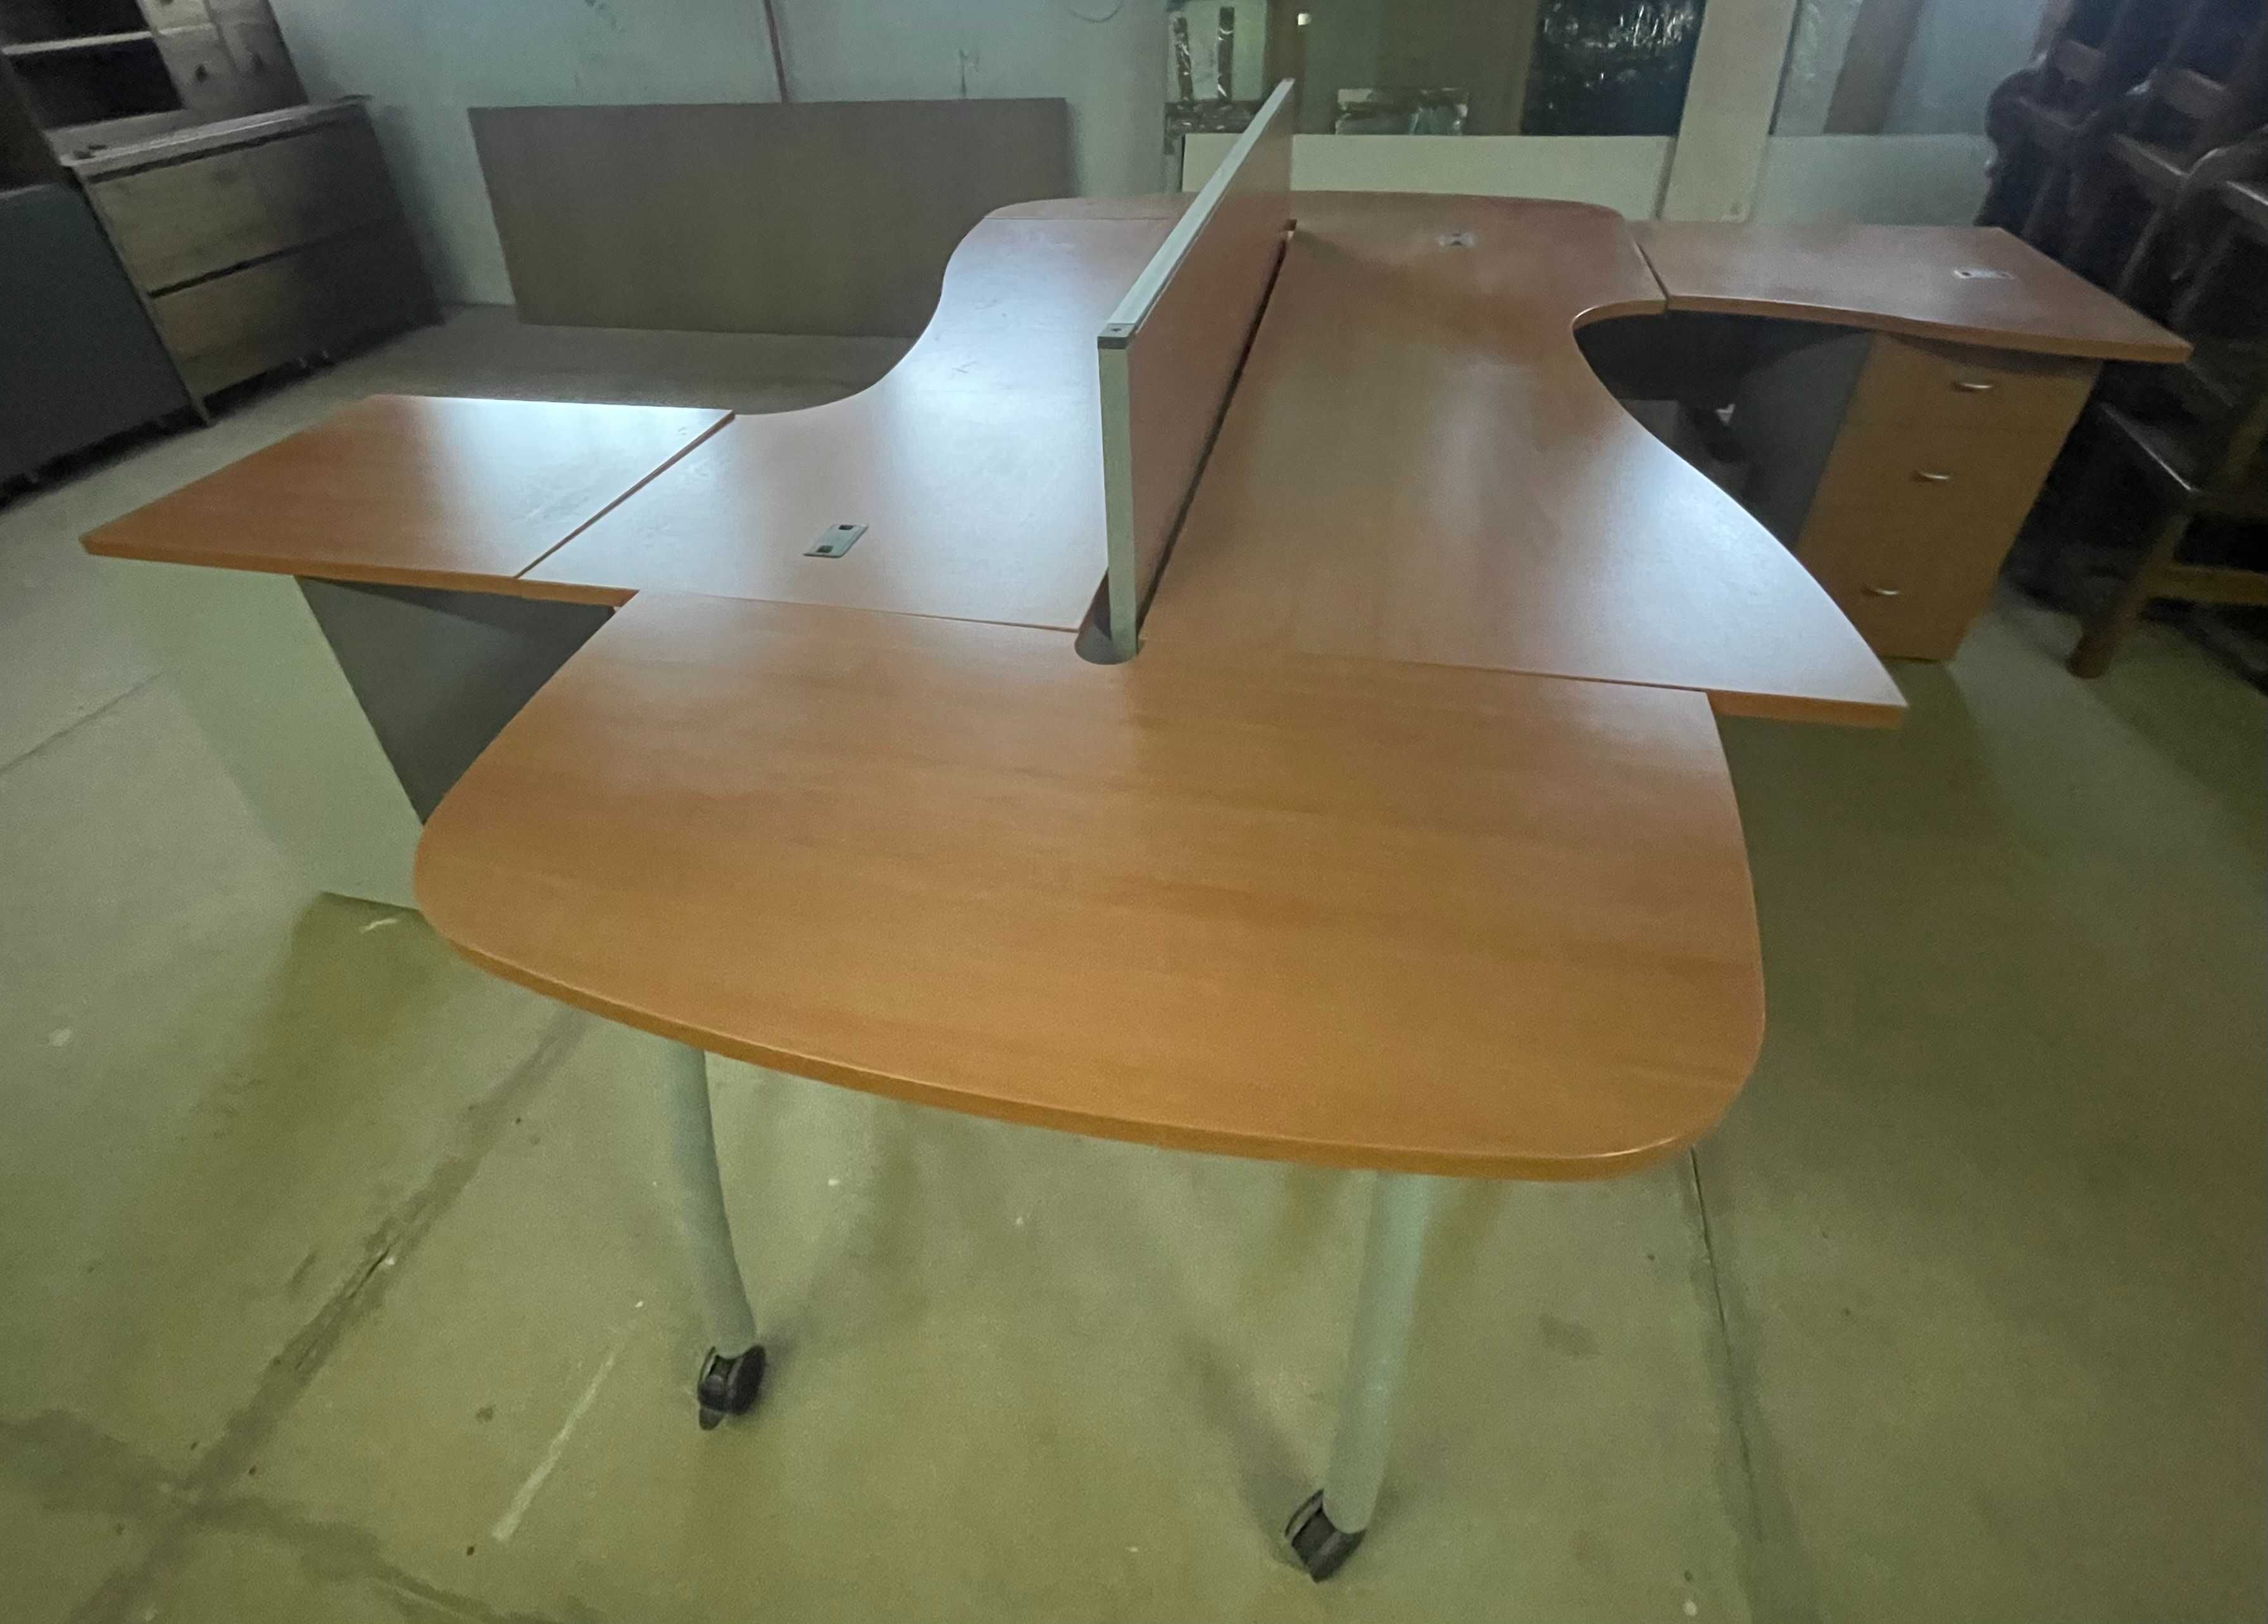 столы офисные с тумбами, производство Италия